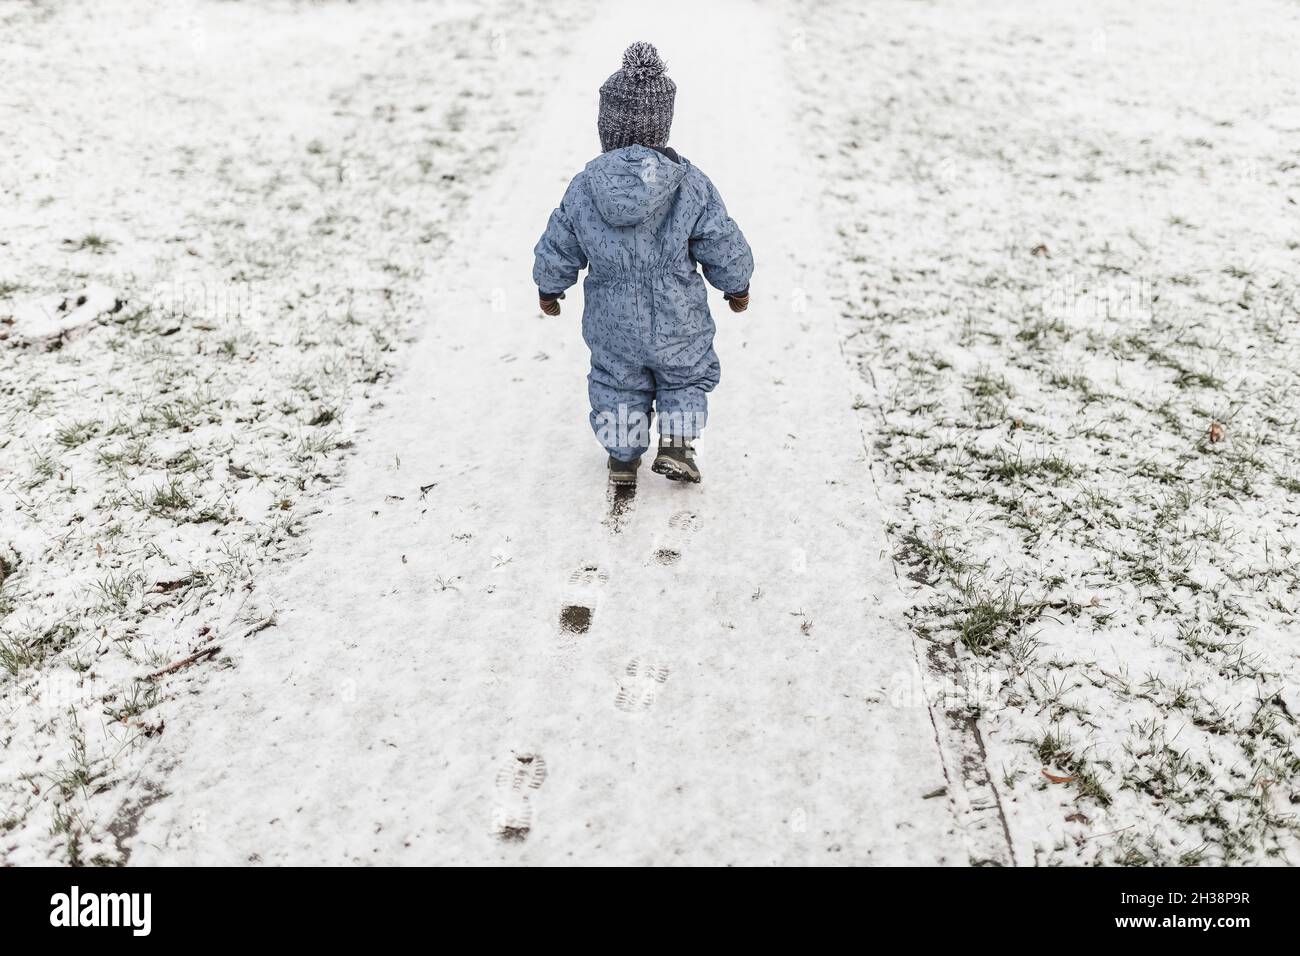 Kleiner Junge in blauem Einteiler und warmem Hut, der auf einem Schnee läuft Stockfoto